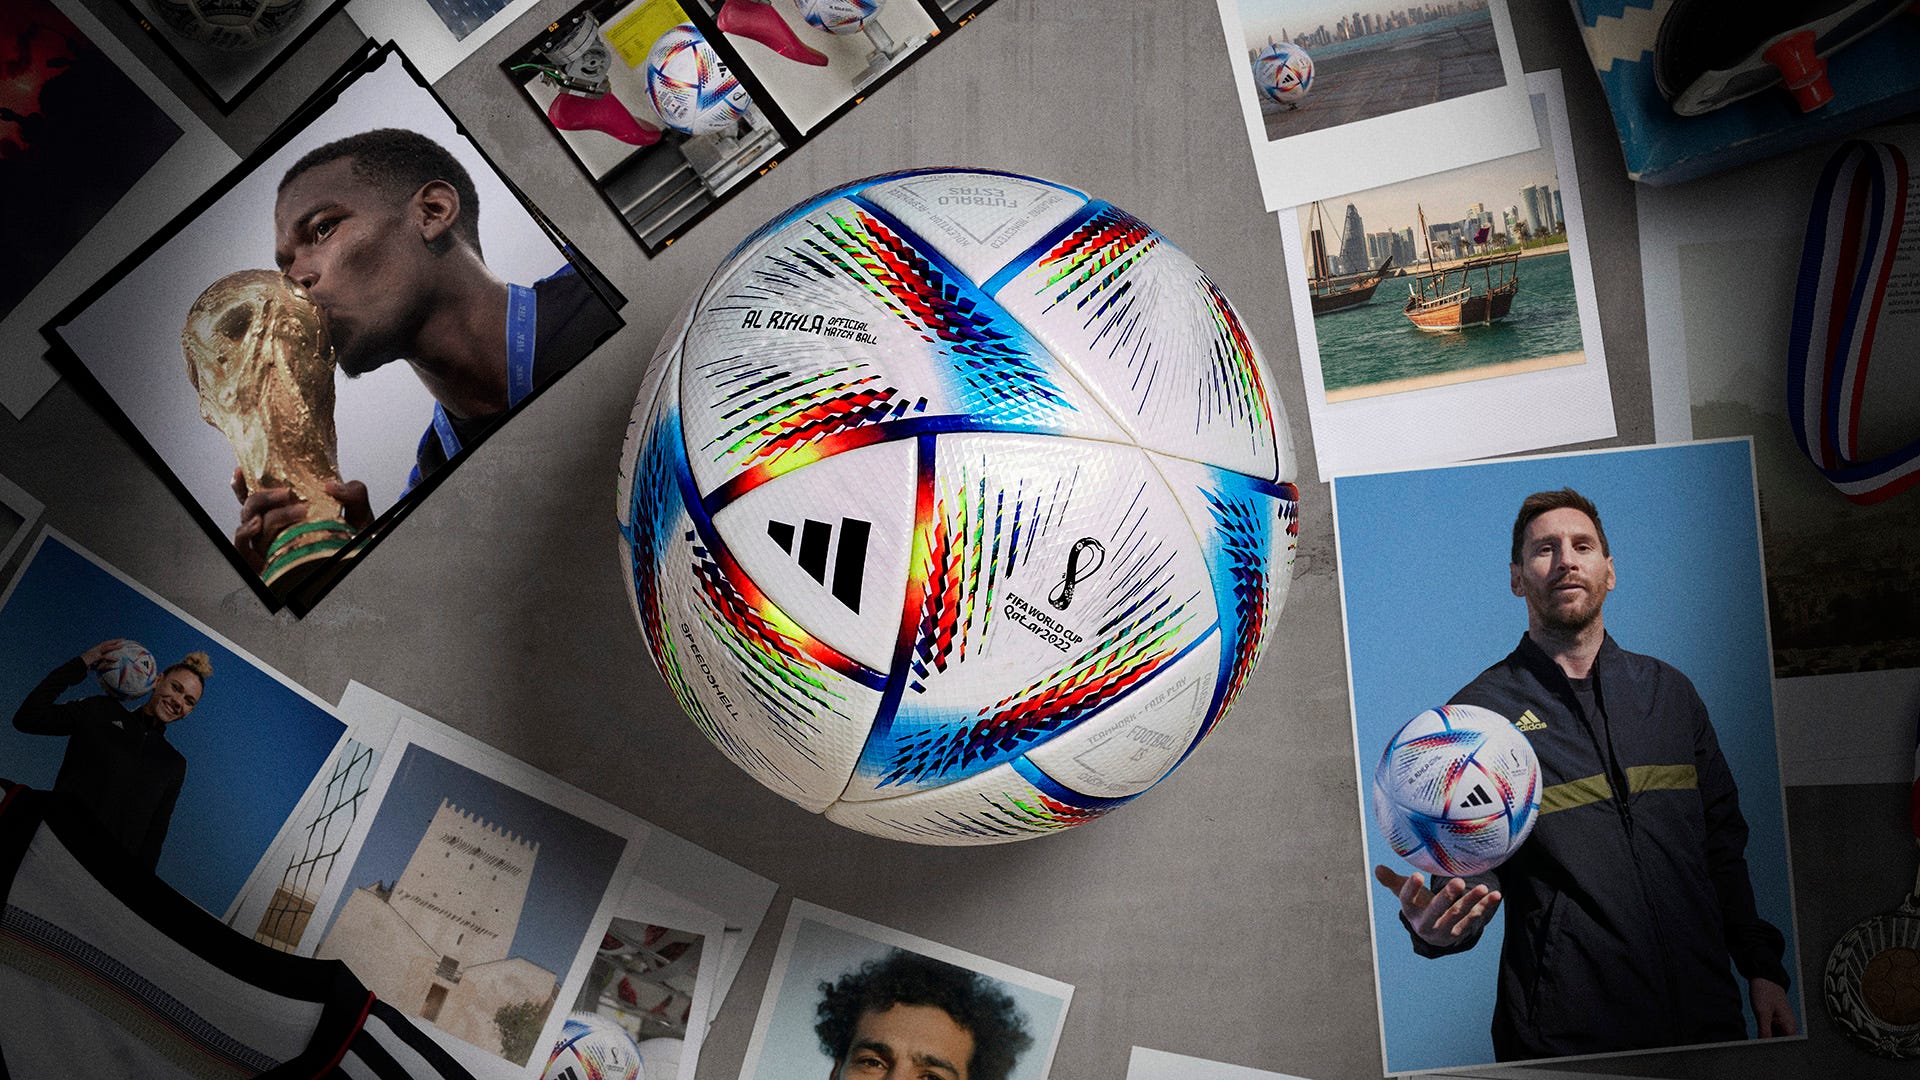 2022年カタール・ワールドカップ公式球「アル・リフラ」のデザイン 